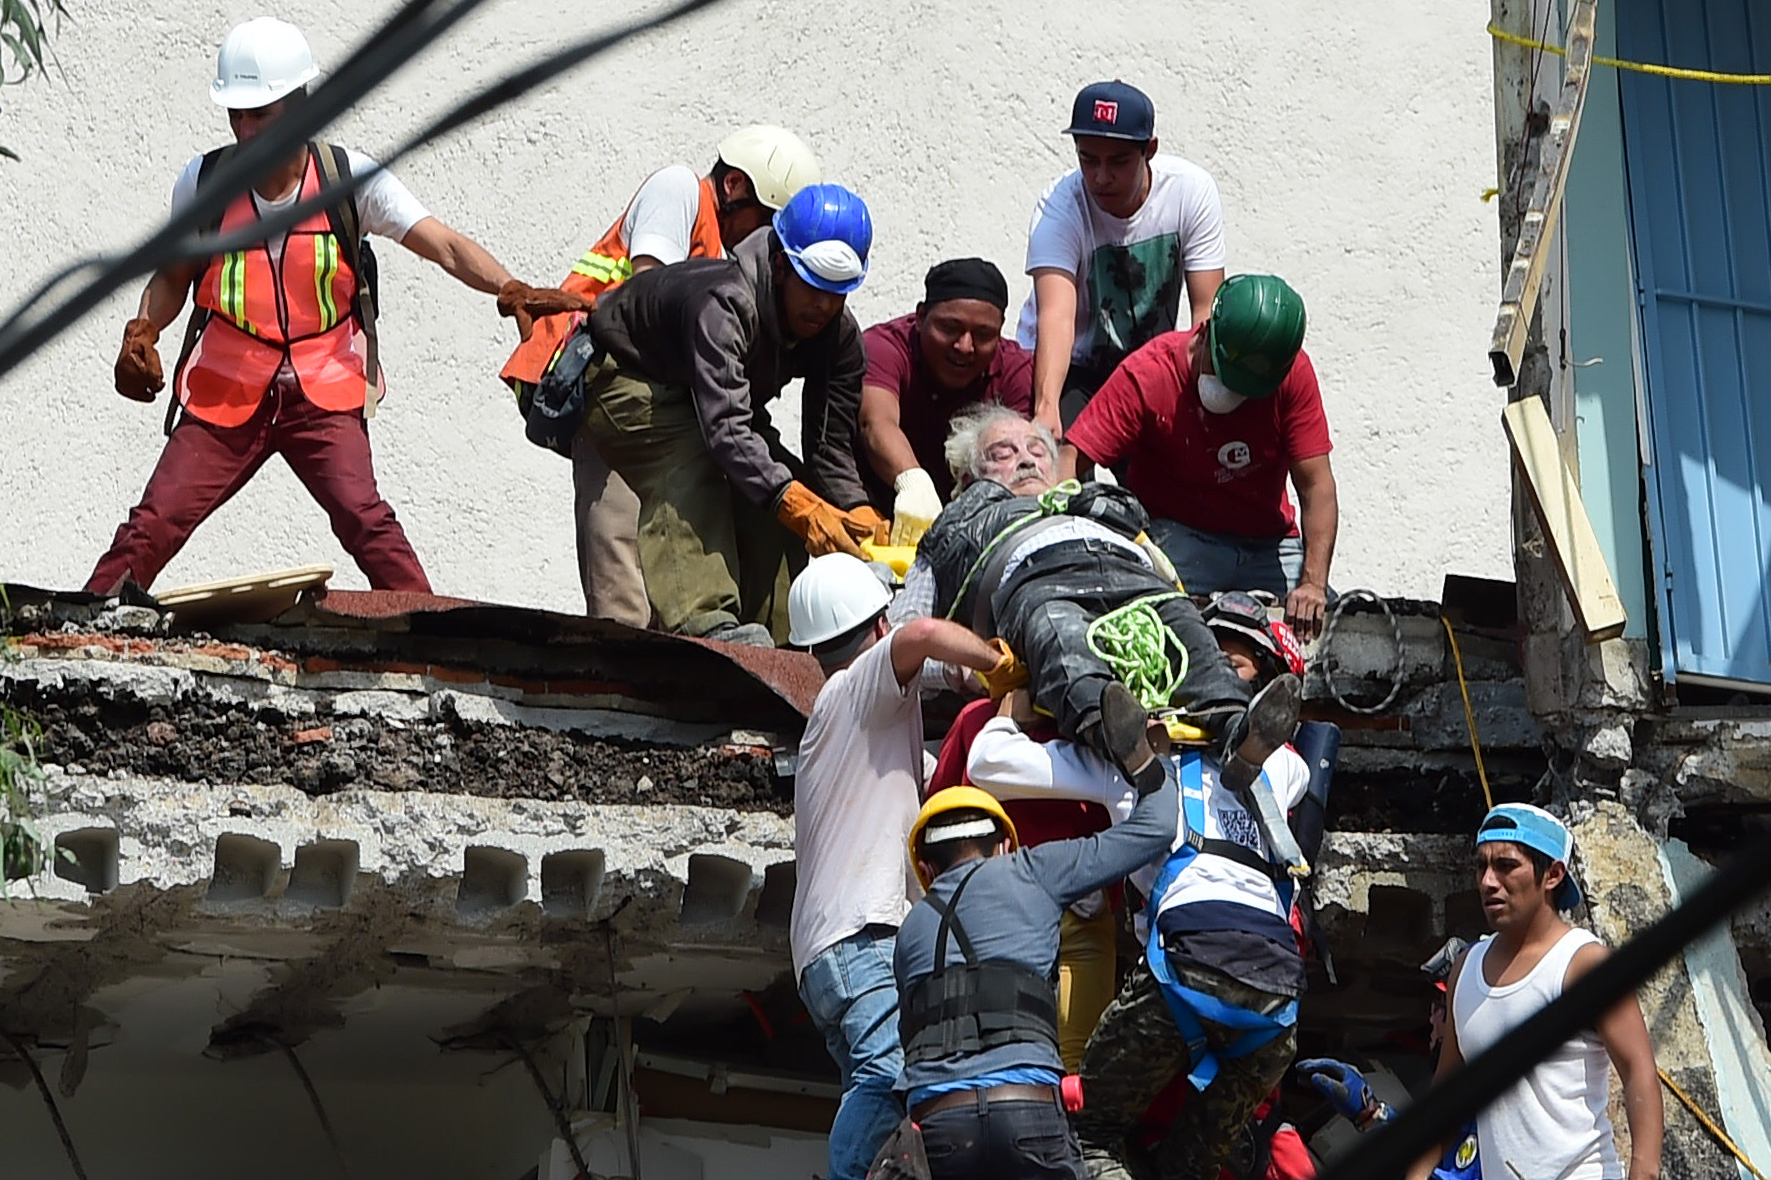 Видео спасения людей. Землетрясение в Мексике 2017 год 19 сентября. Спасатели спасают людей из под завалов. Спасательные работы из под завалов.